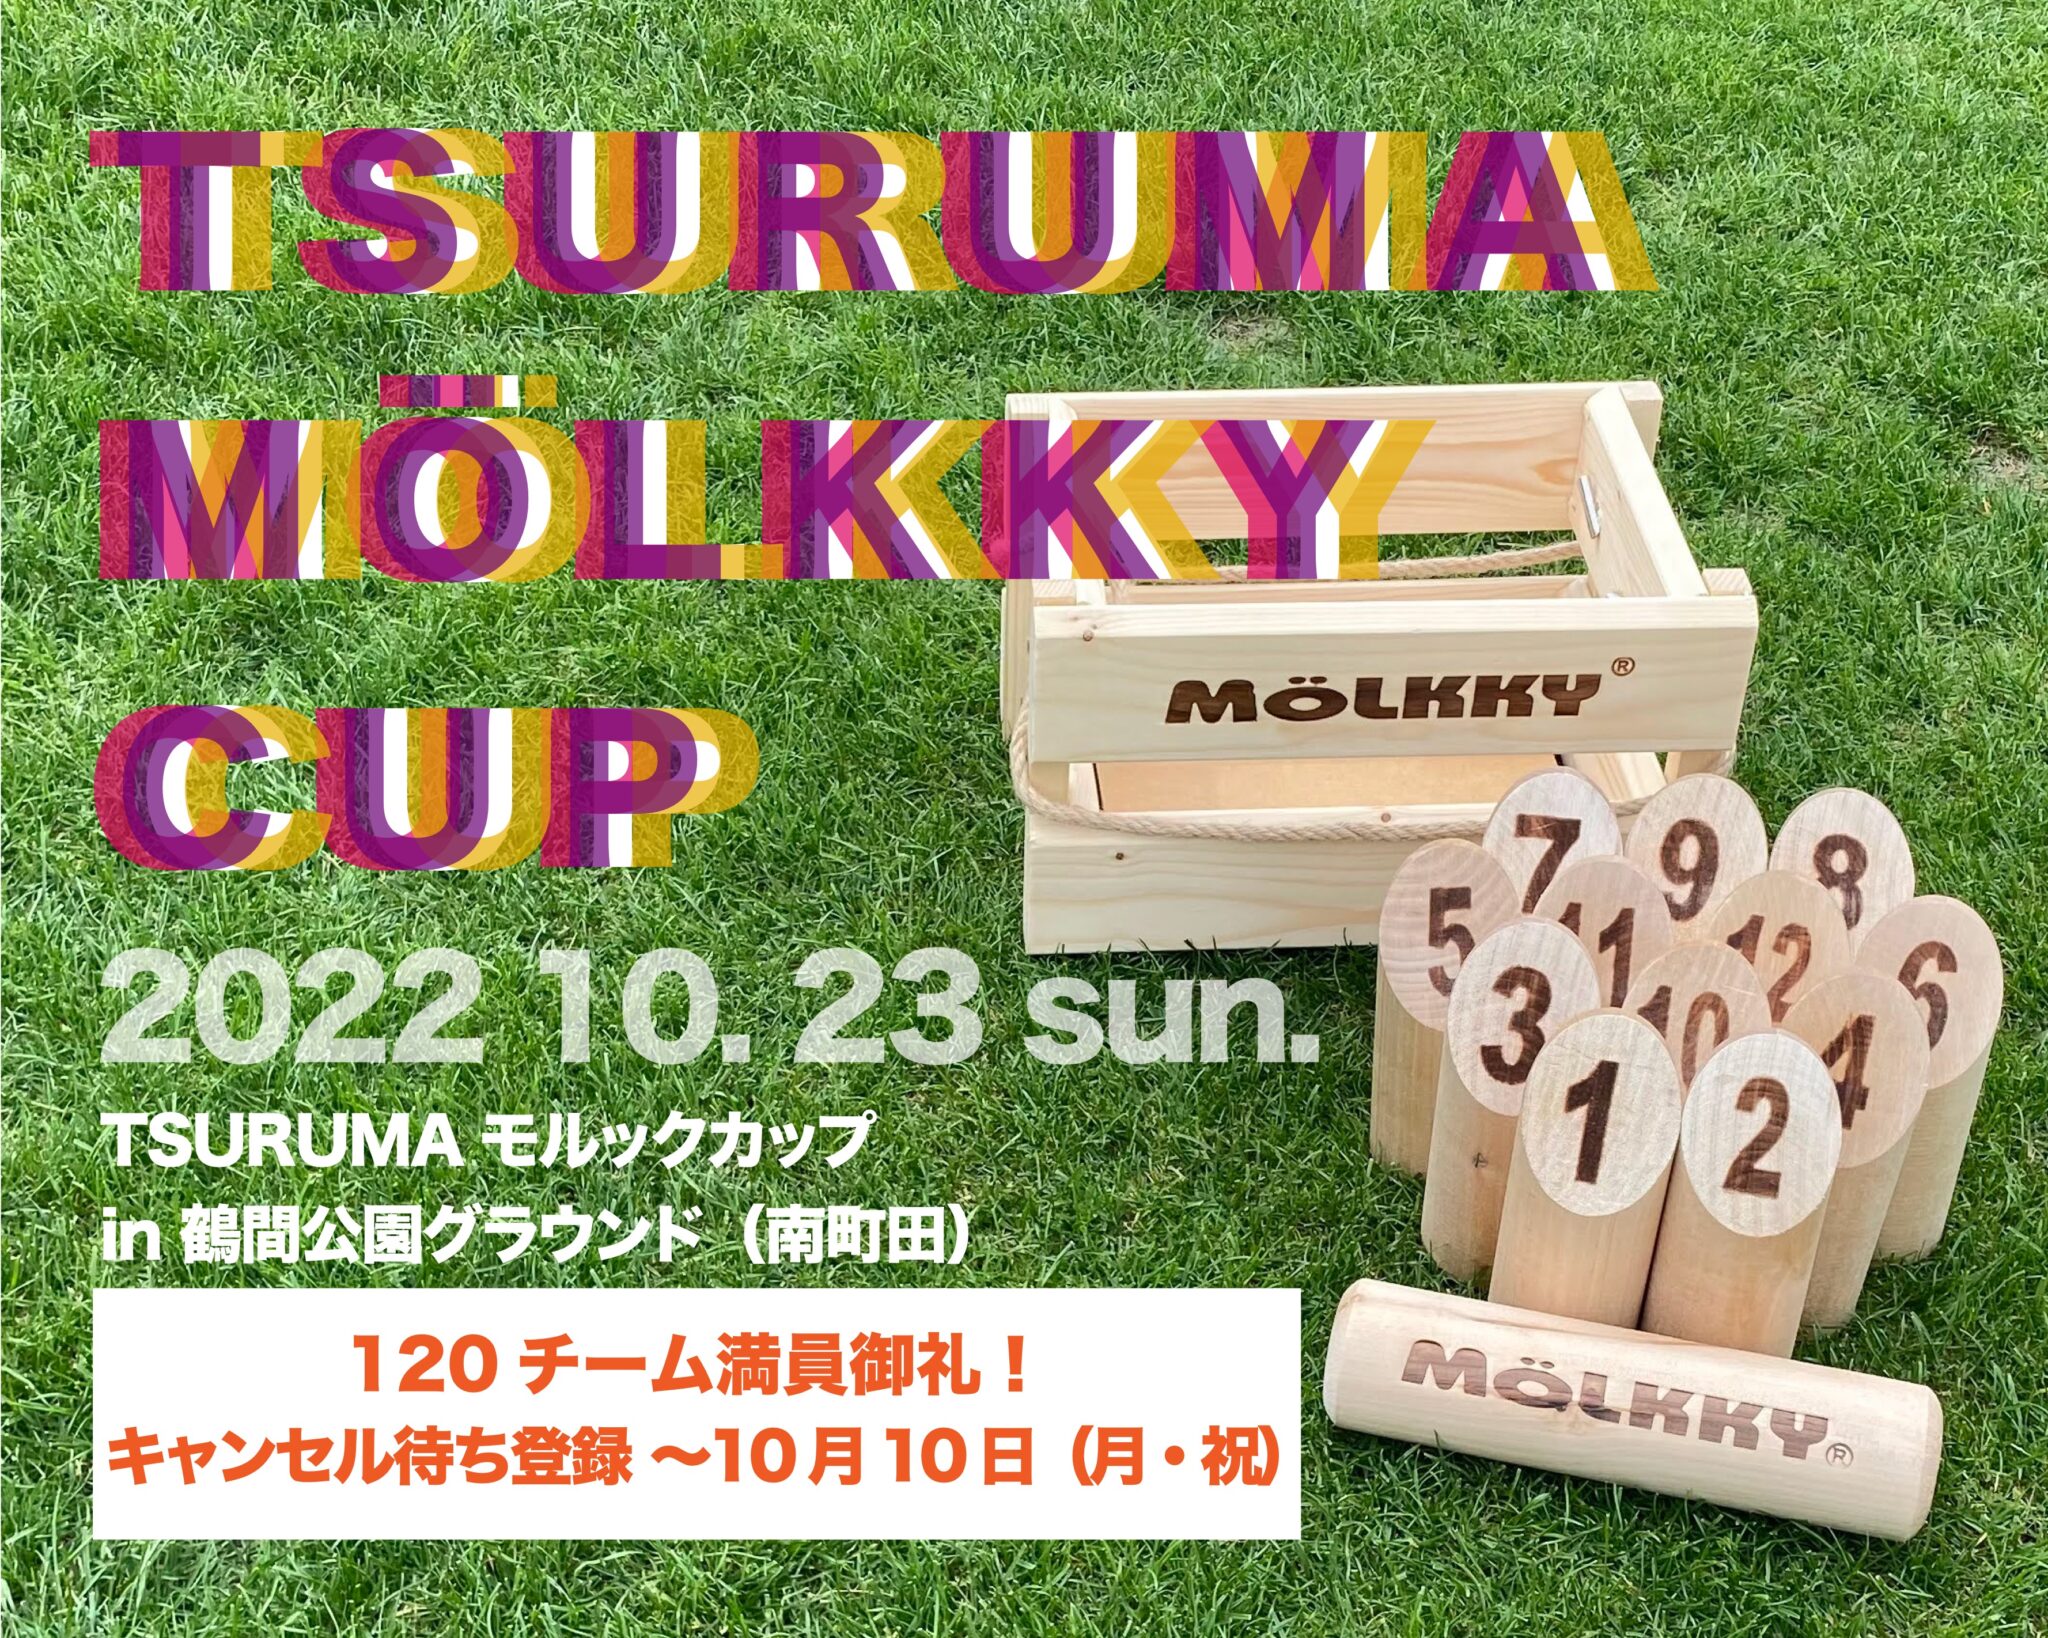 Tsuruma Cup